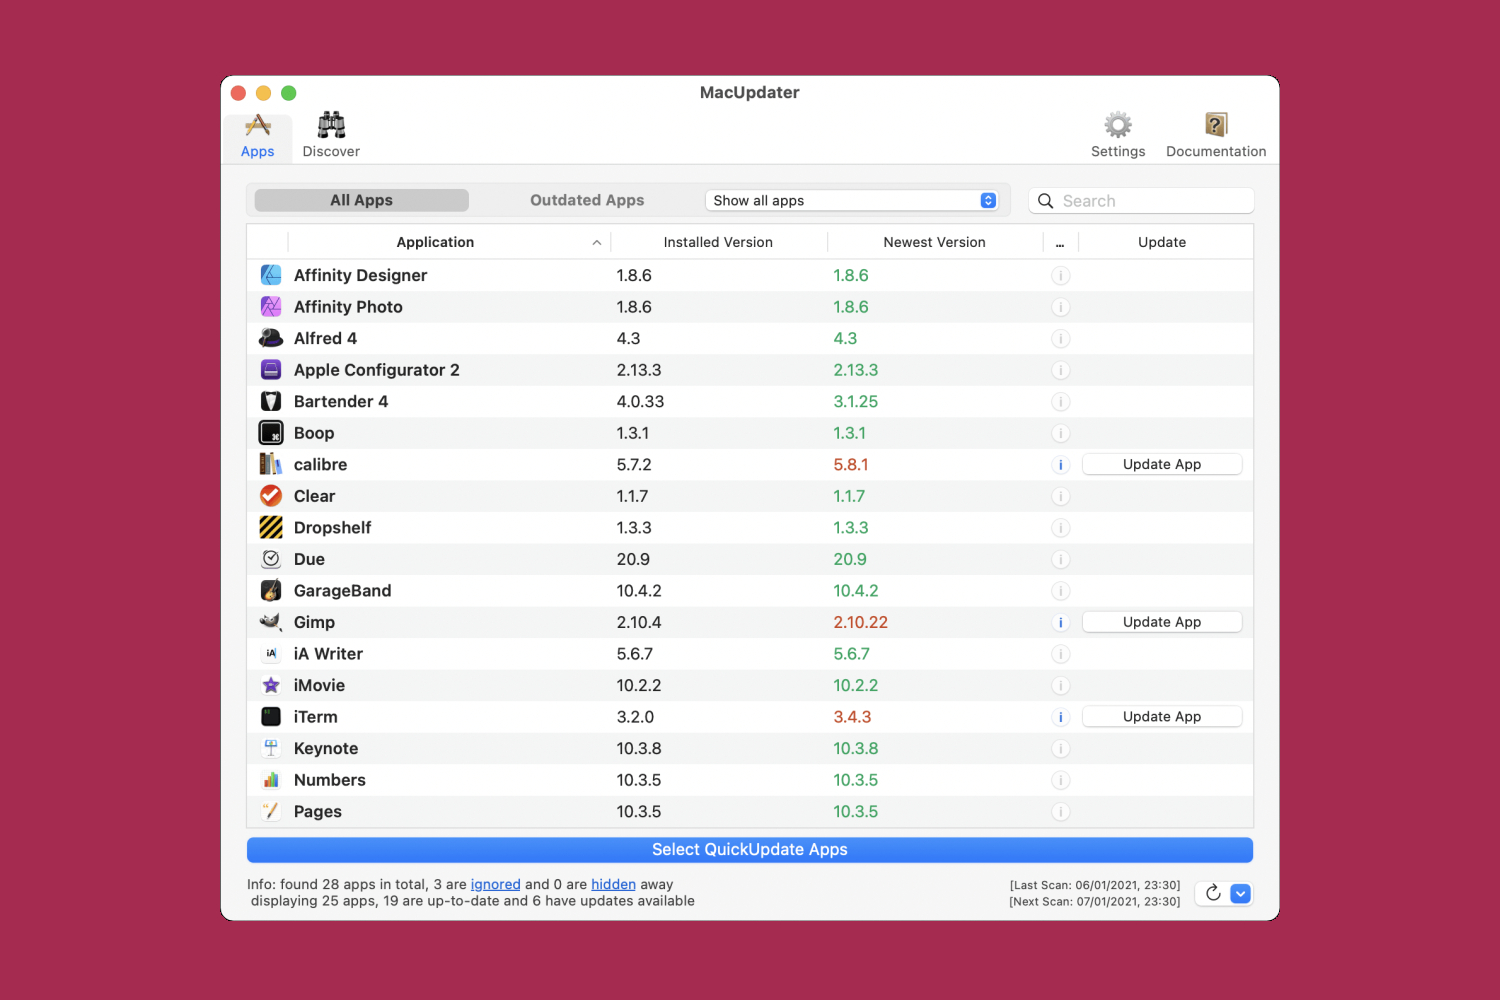 L'applicazione MacUpdater Mac che mostra la schermata principale, con le app pronte per essere aggiornate.